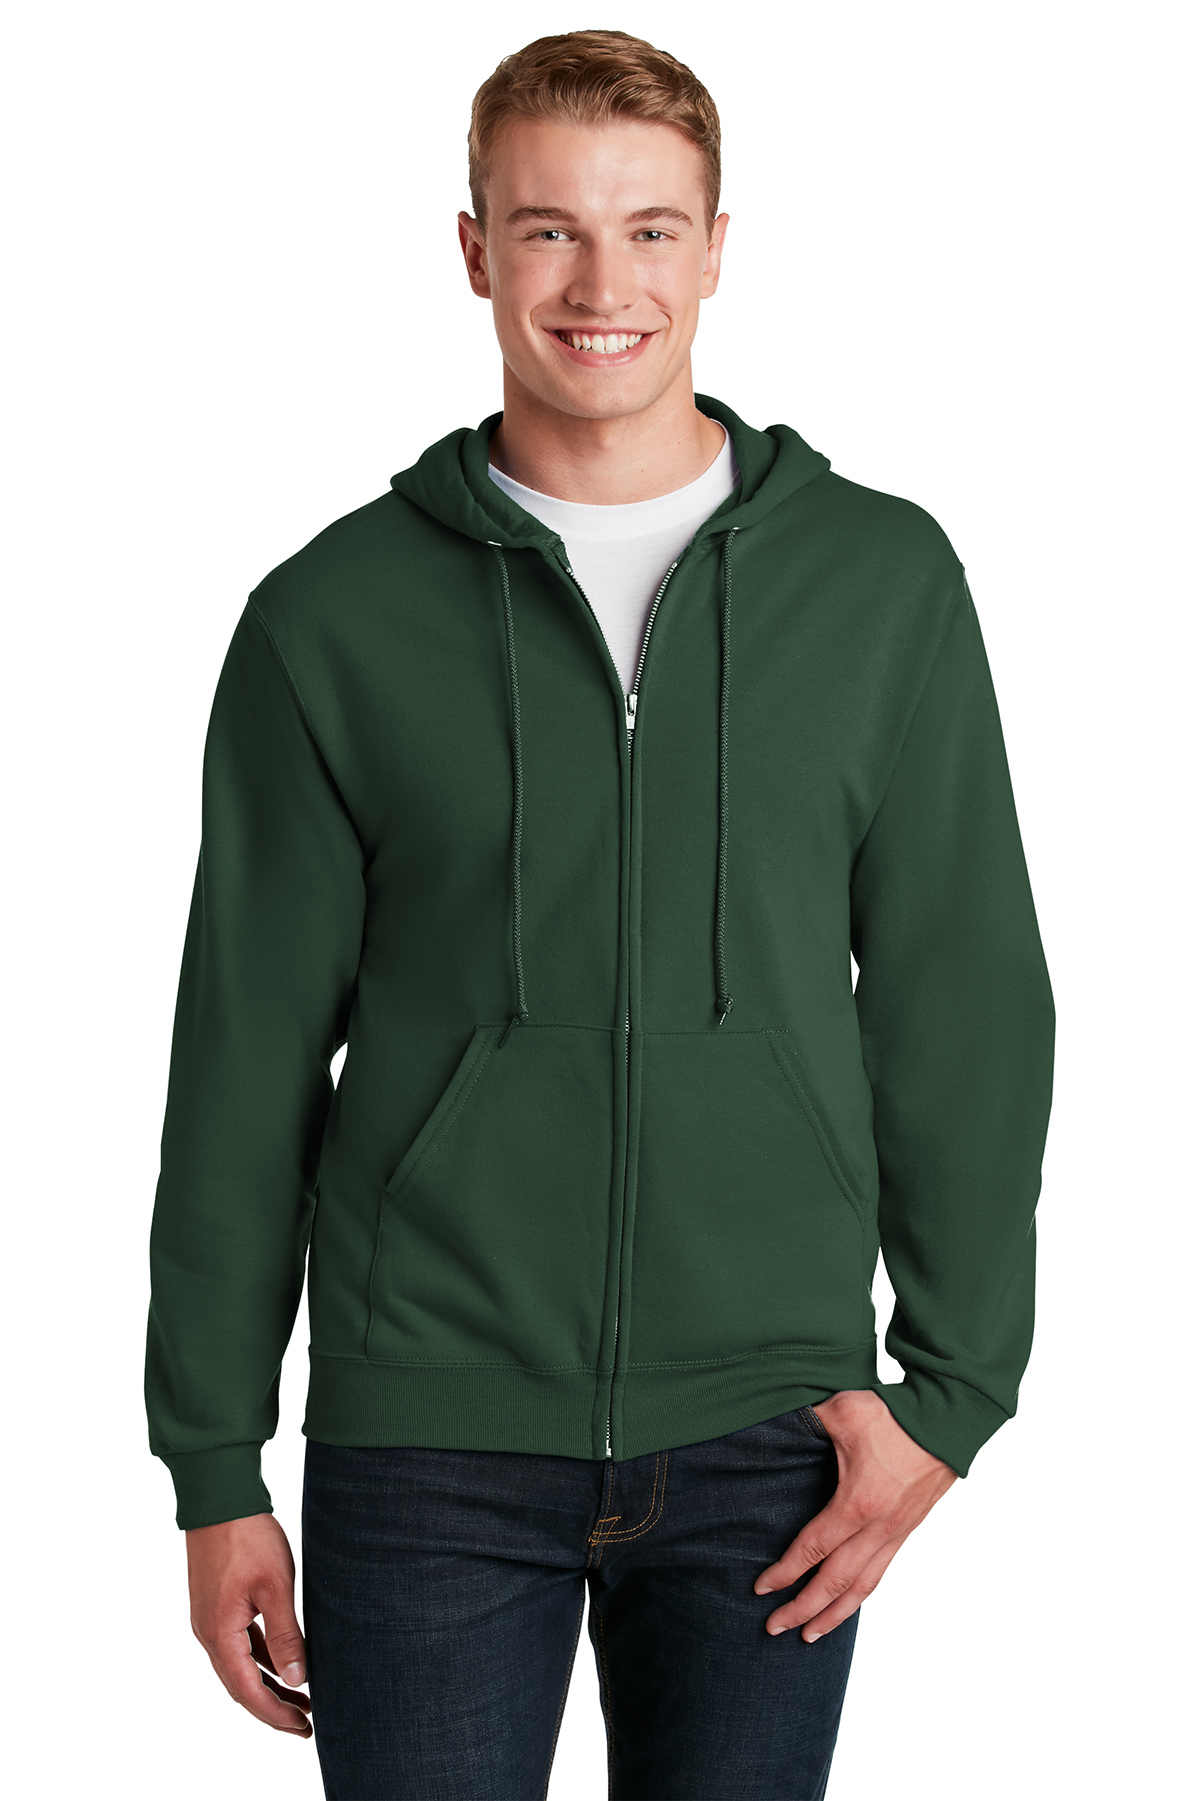 JERZEES - NuBlend Full-Zip Hooded Sweatshirt | Product | SanMar